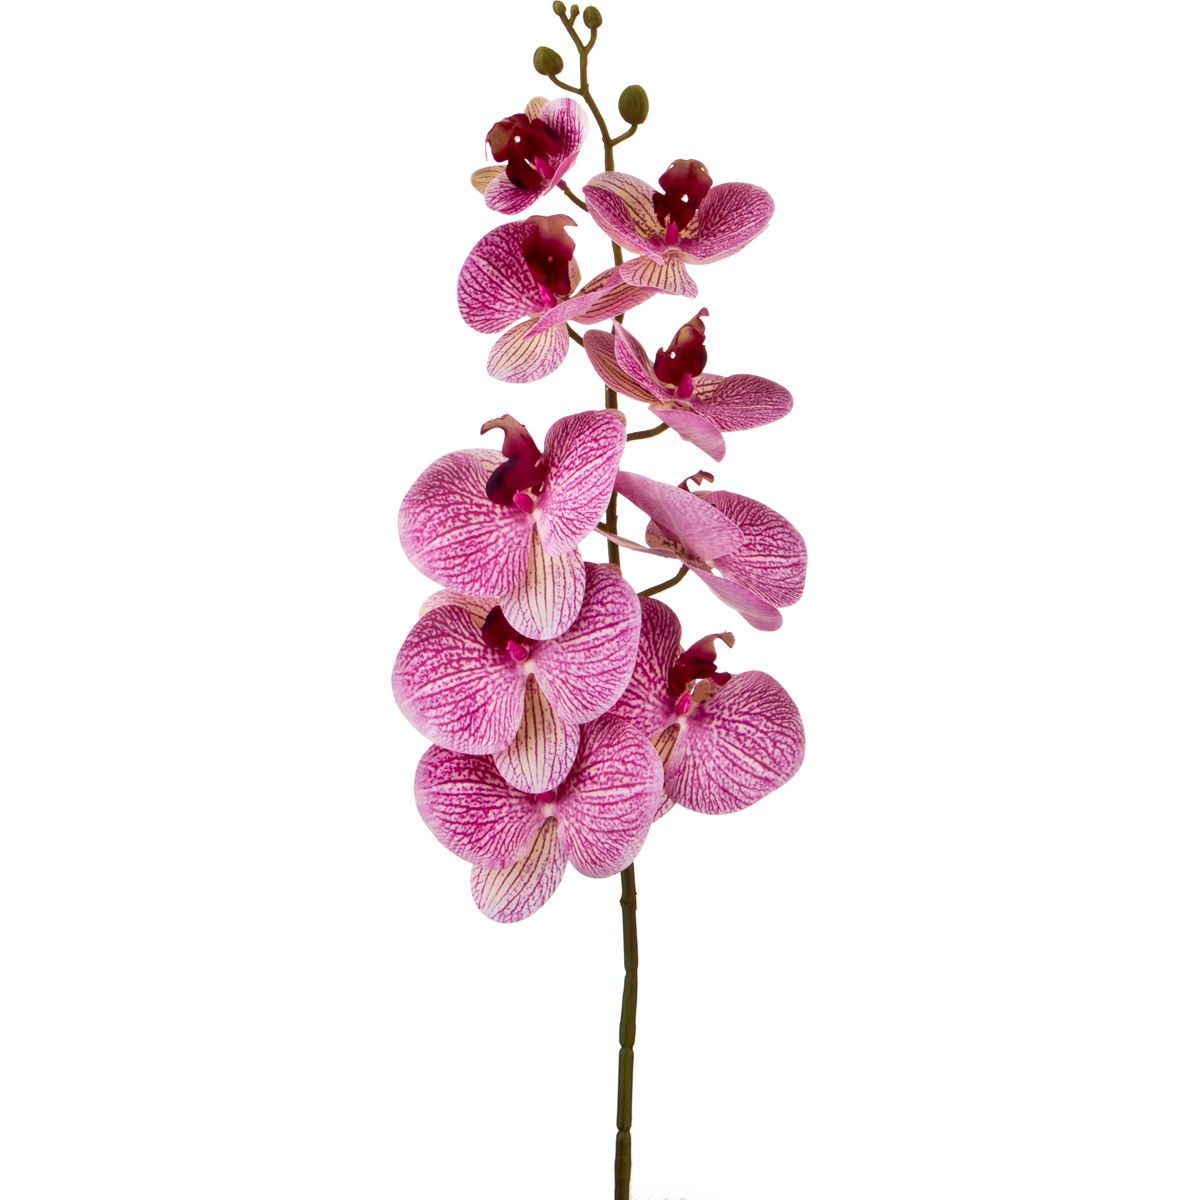 Искусственный цветок Орхидея (100 см), размер 100 см hpff378702 Искусственный цветок Орхидея (100 см) - фото 1